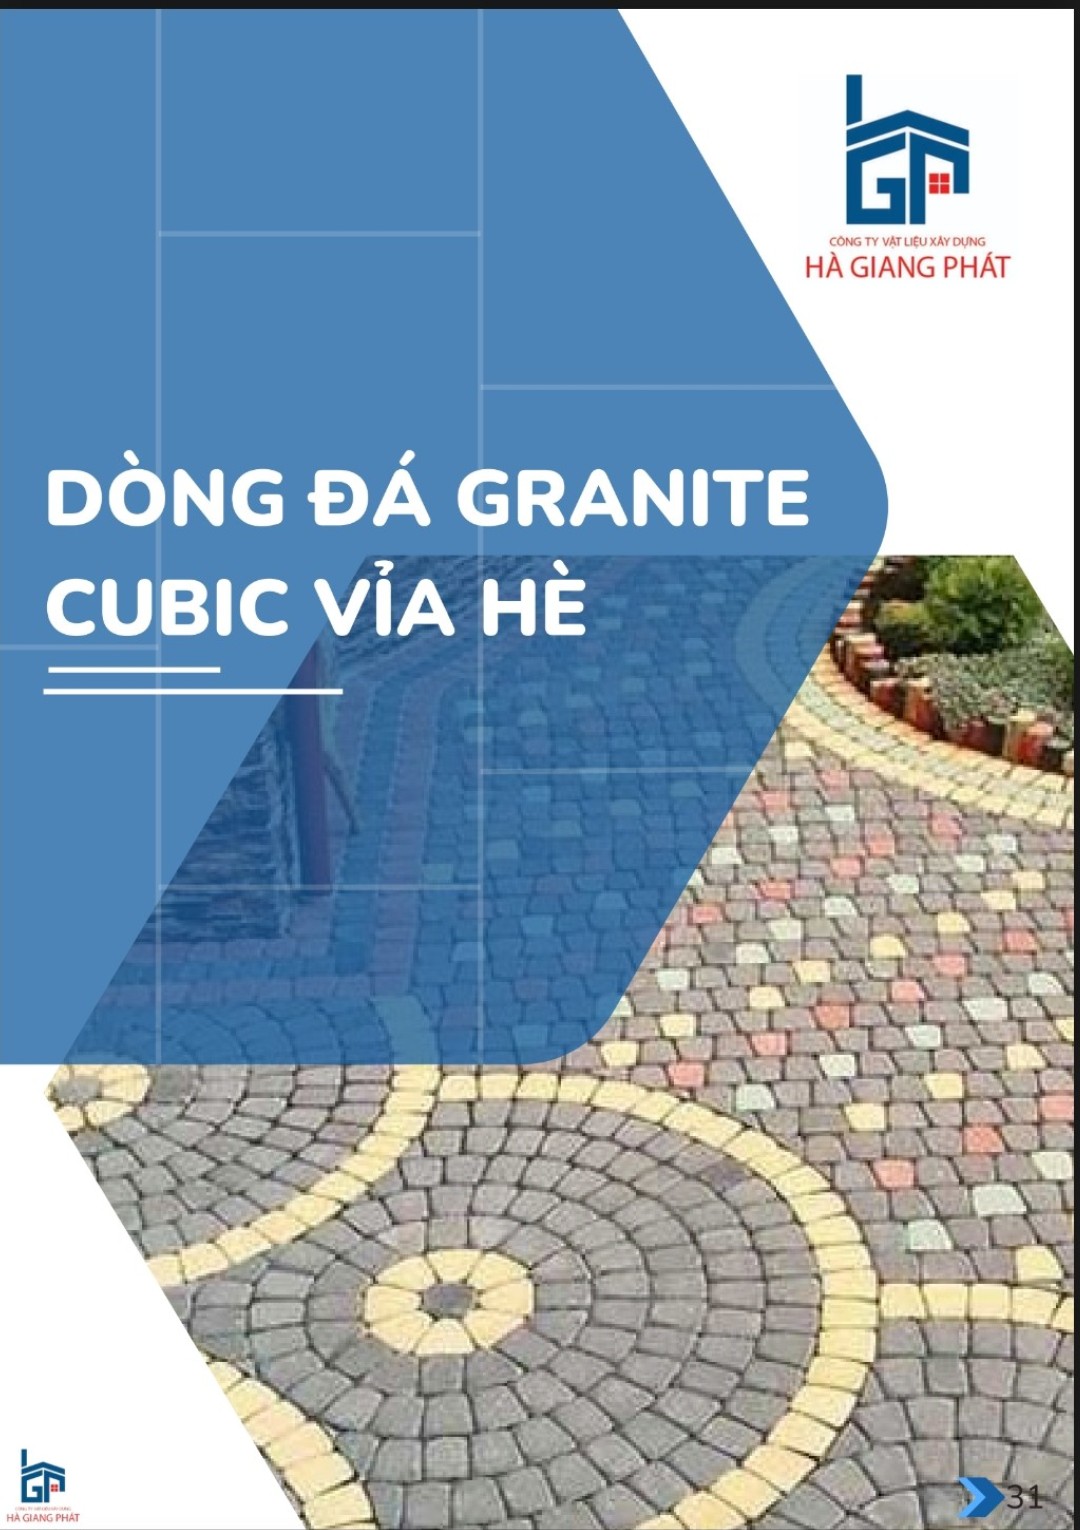 Đá Granite Cubic Vỉa Hè: Sự Chắc Chắn và Bền Vững cho Mỗi Bước Chân